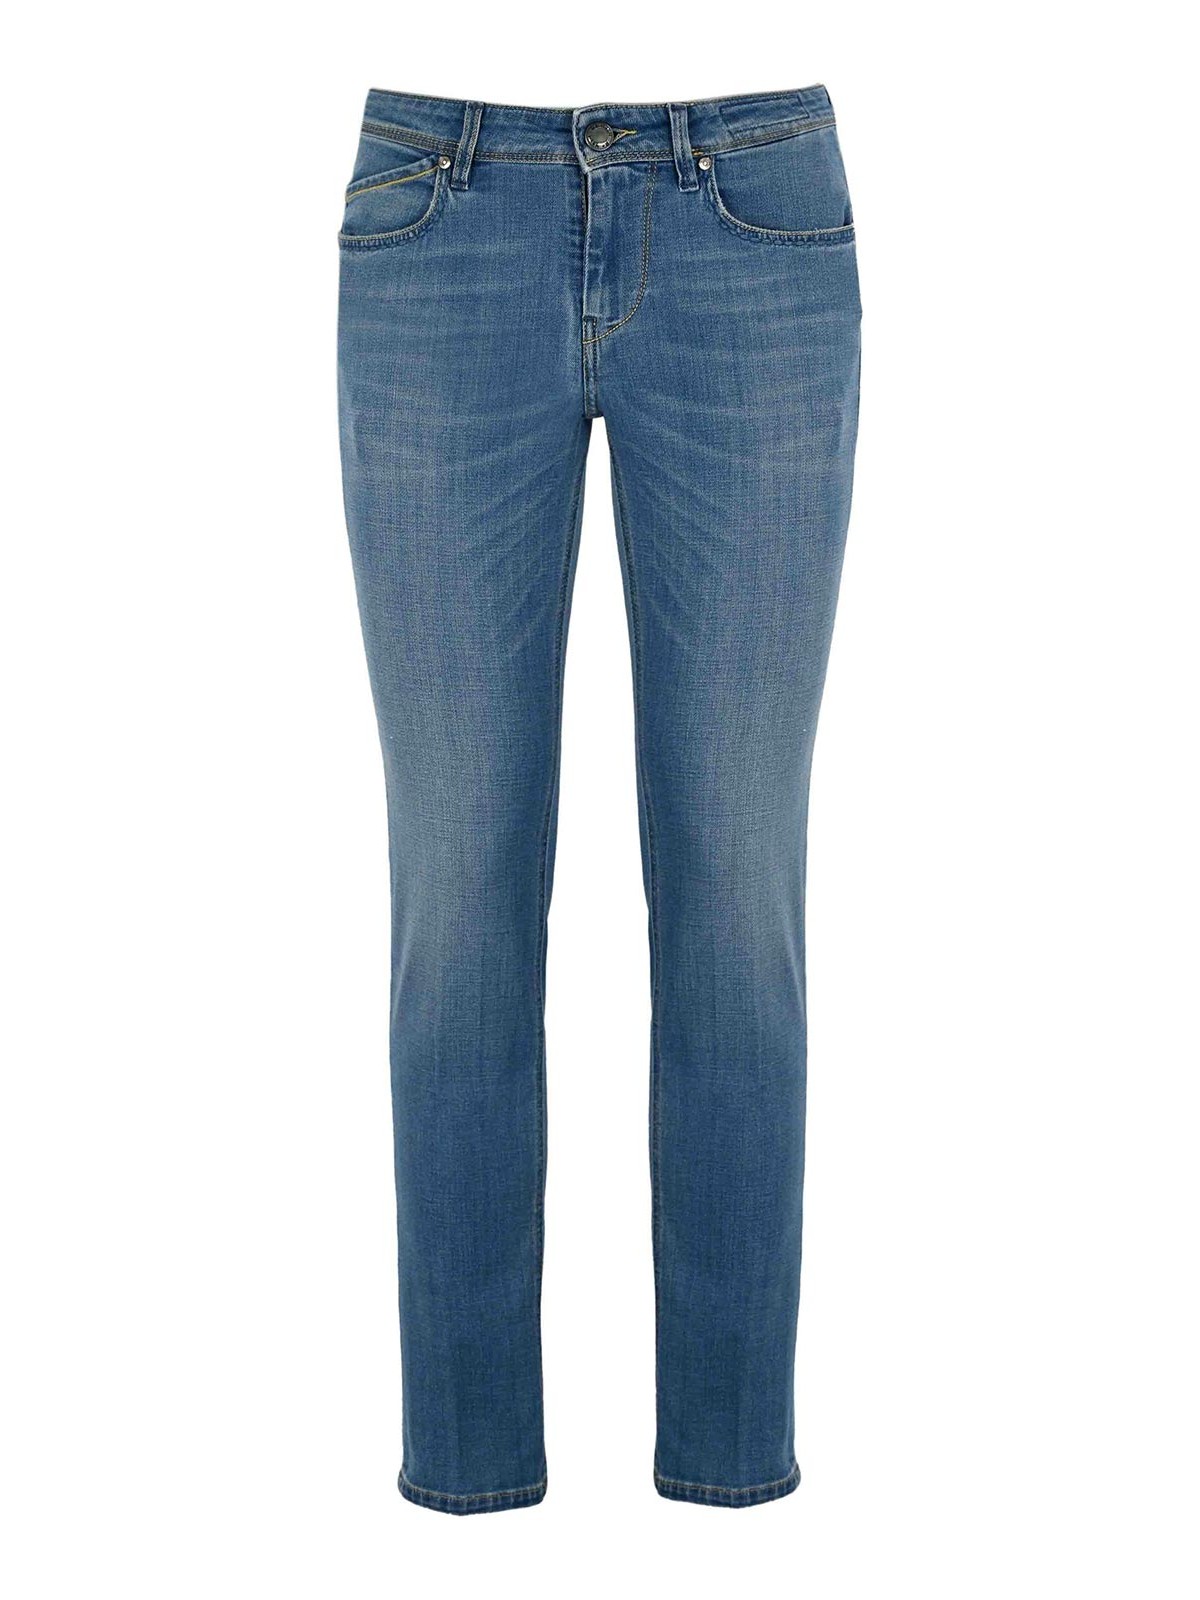 Shop Re-hash Blue Rubens Jeans